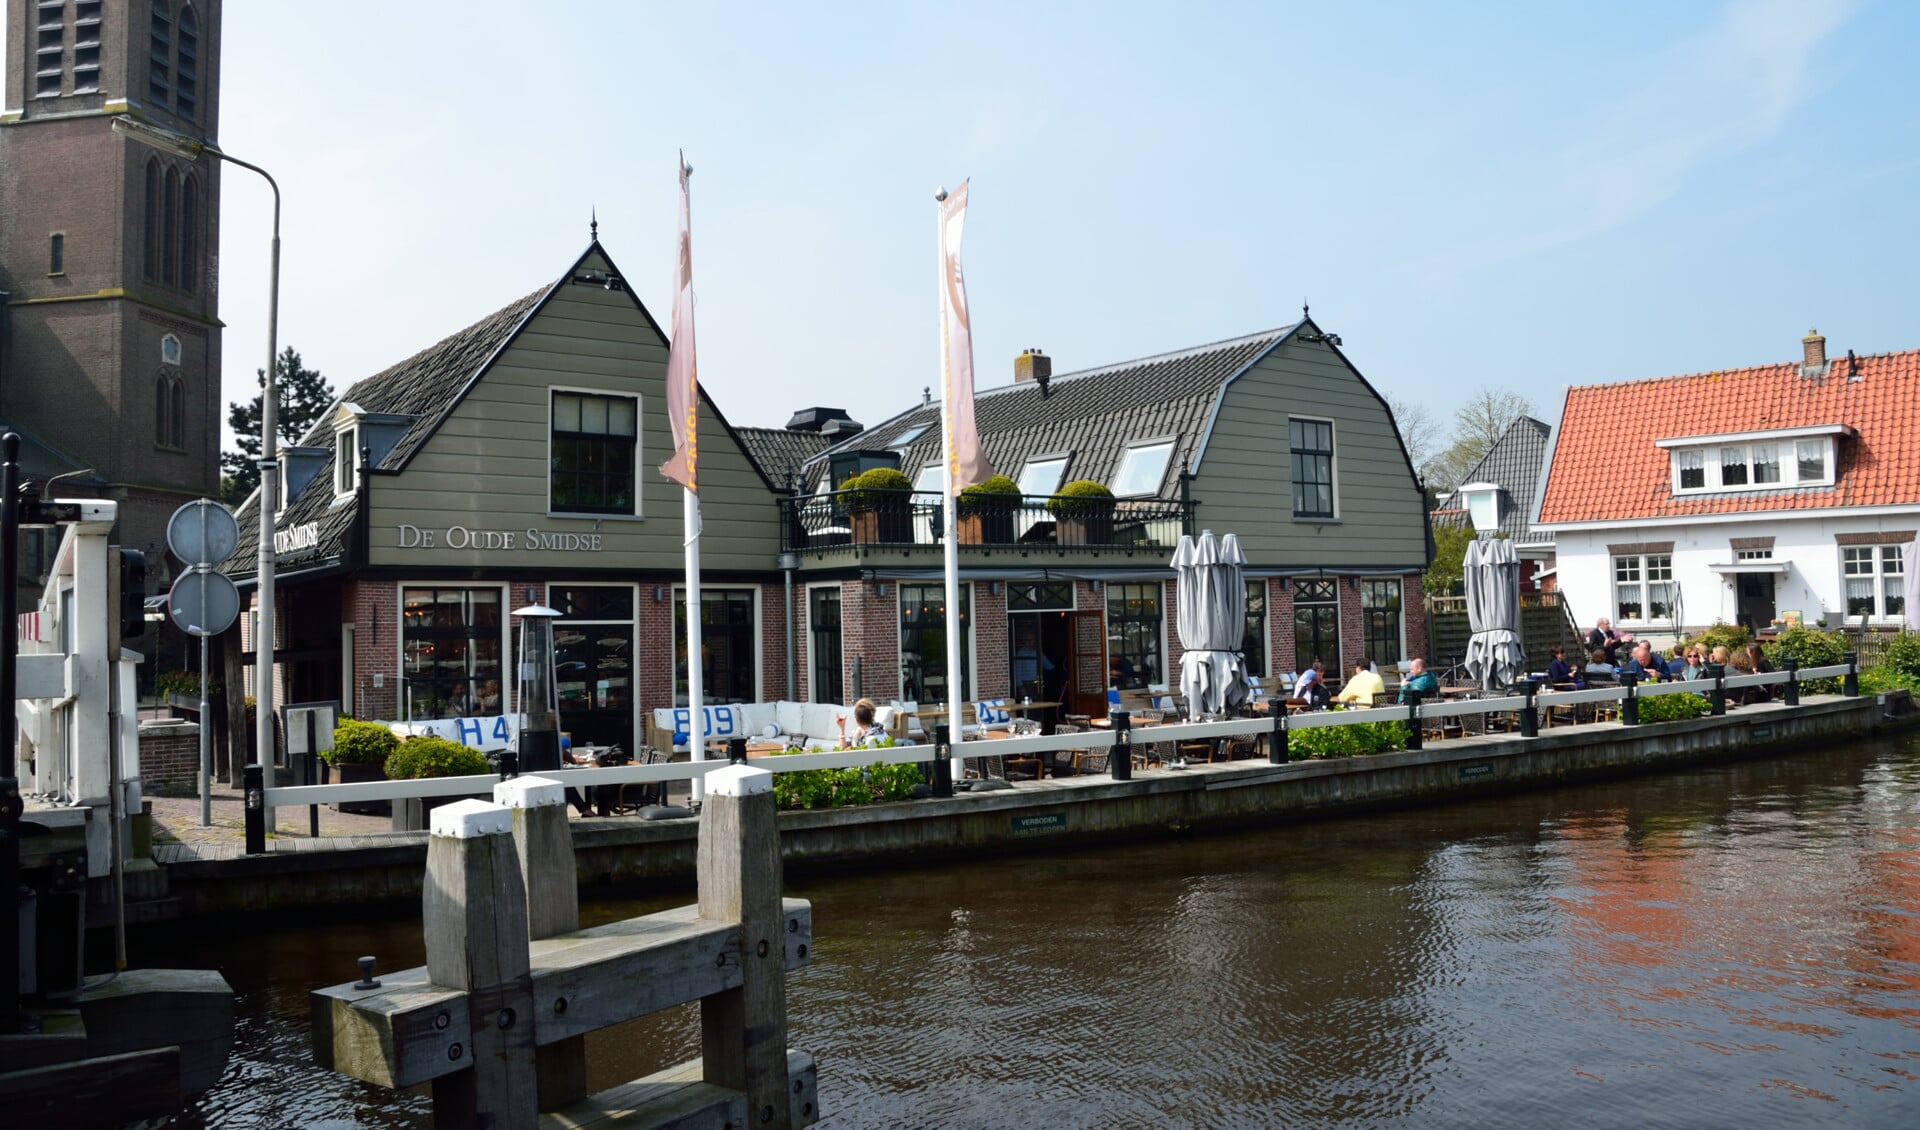 Restaurant De Oude Smidse in Ouderkerk aan de Amstel.